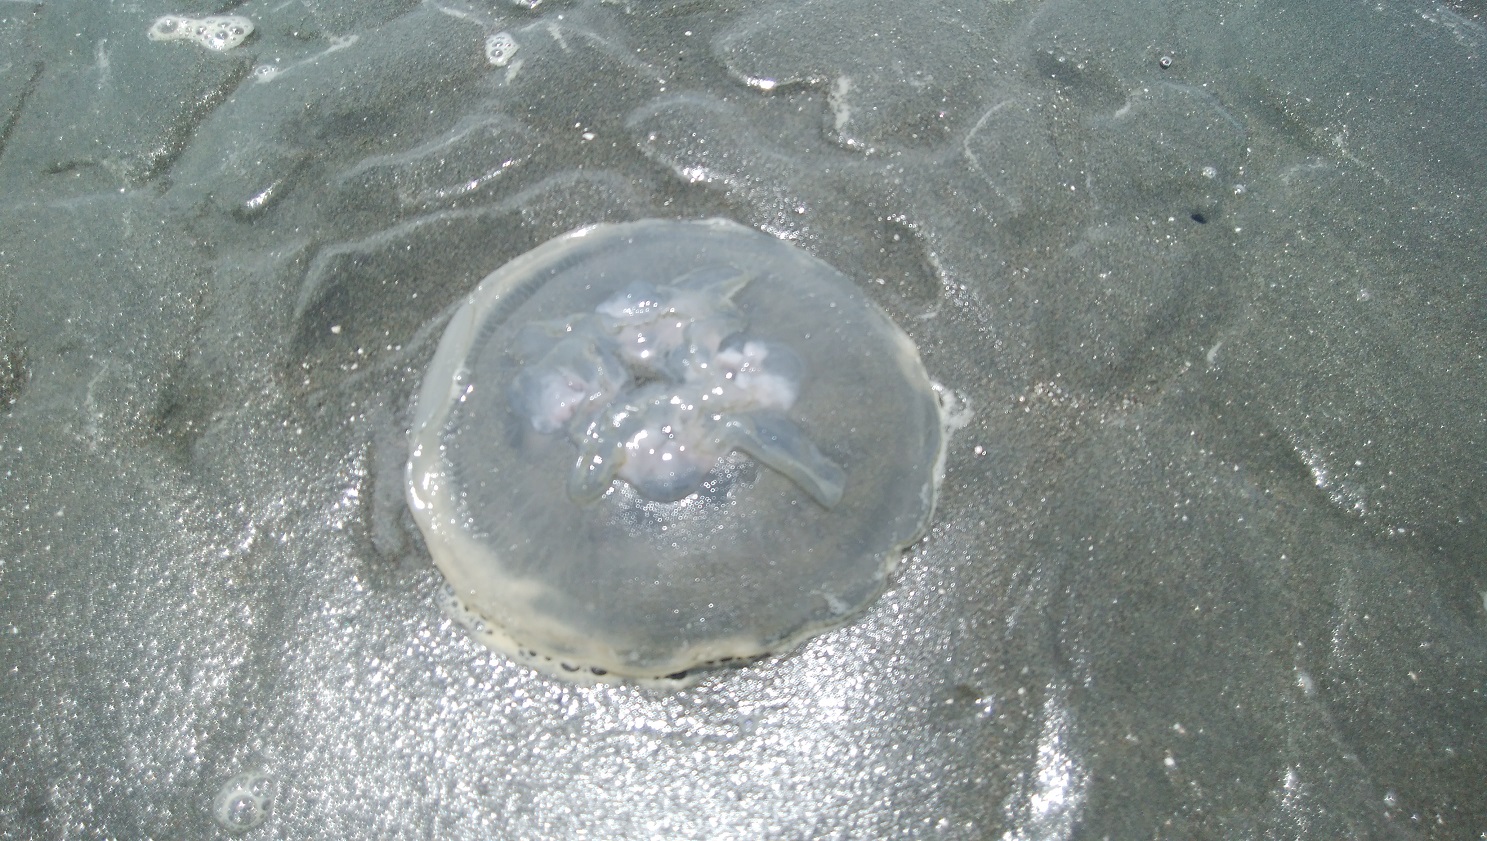 アタマの引き出し は生きるチカラだ クラゲを英語で Jellyfish というわけ クラゲは円盤状で弾力性のある透明なゼラチン質のかたまり